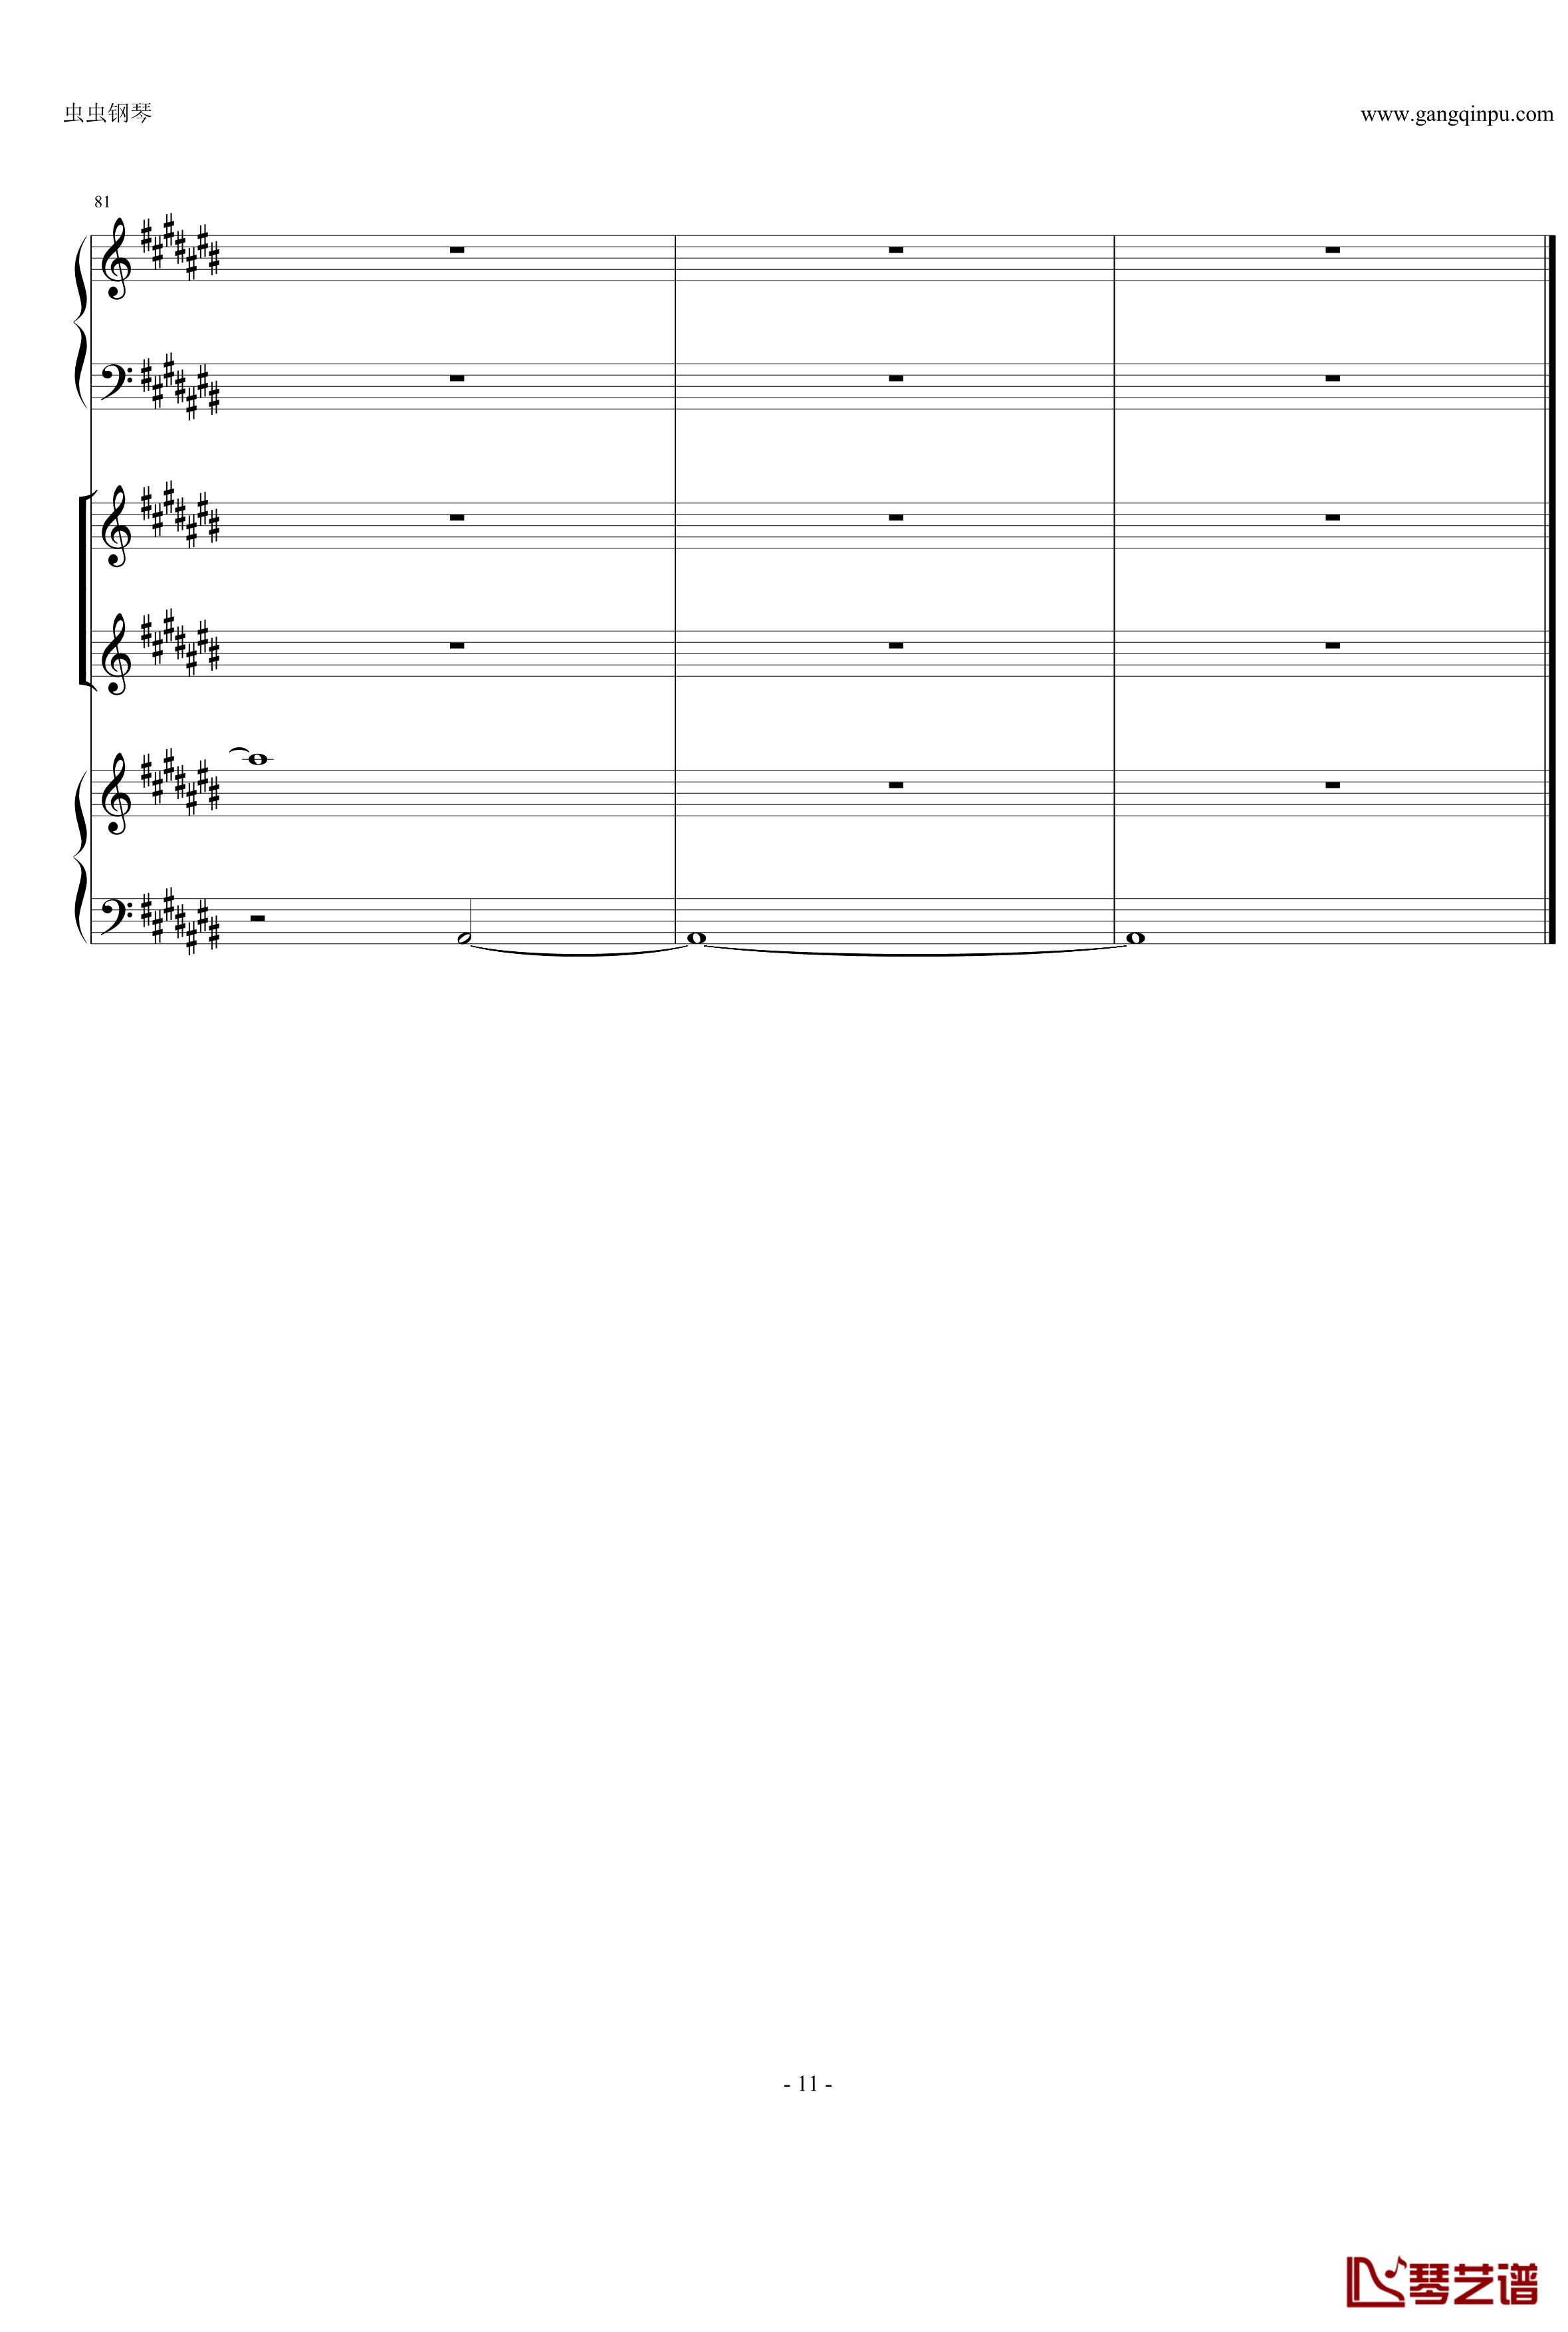 Anymusic钢琴谱-机械乐器乐-第三乐章11